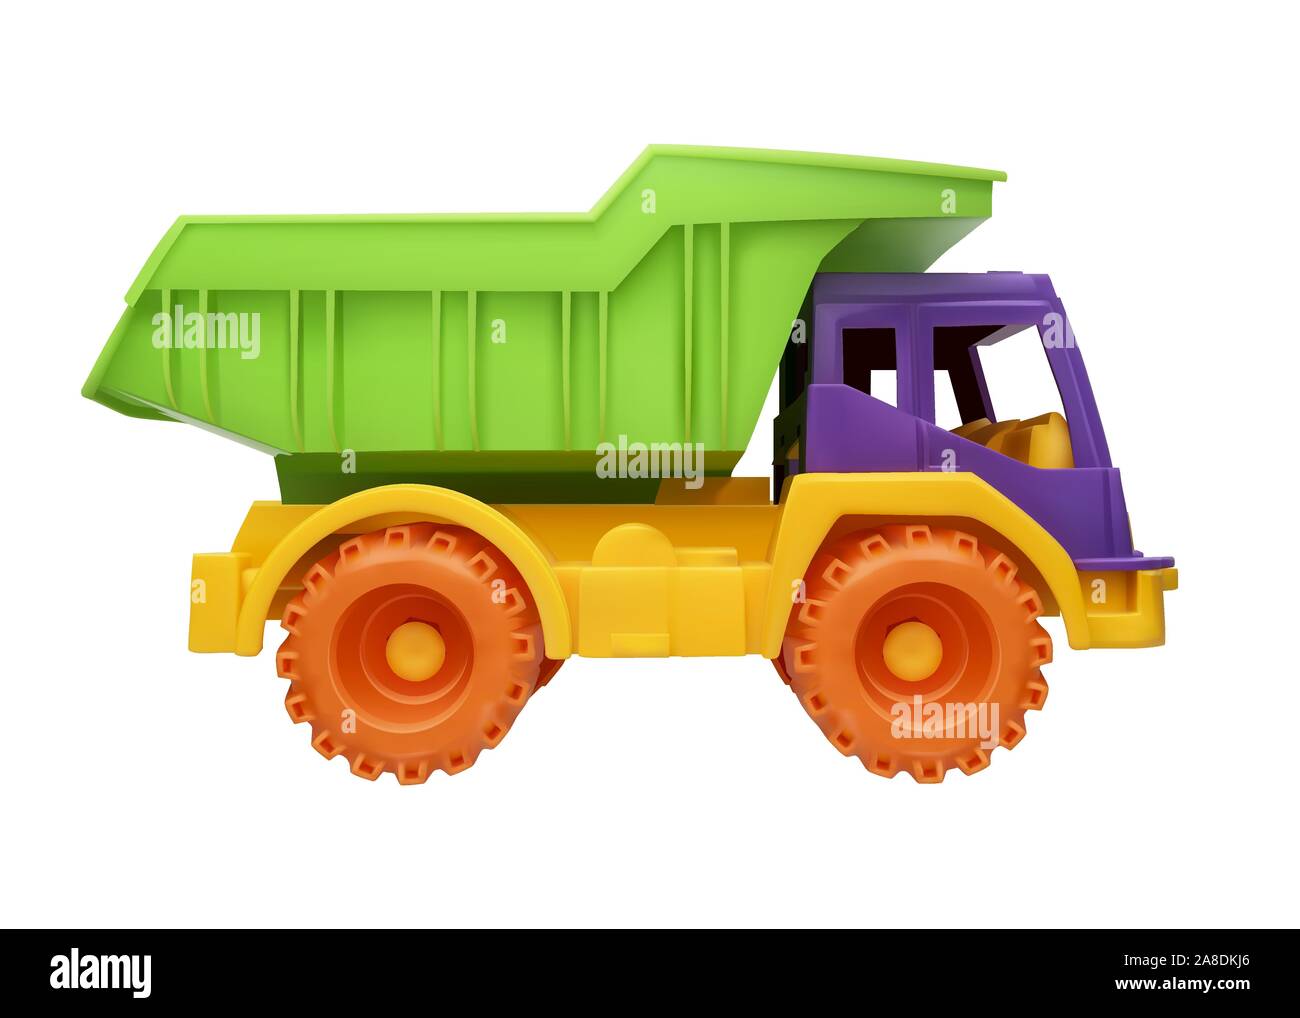 Kinder Spielzeug-LKW vector Abbildung auf einem weißen Hintergrund isoliert Stock Vektor